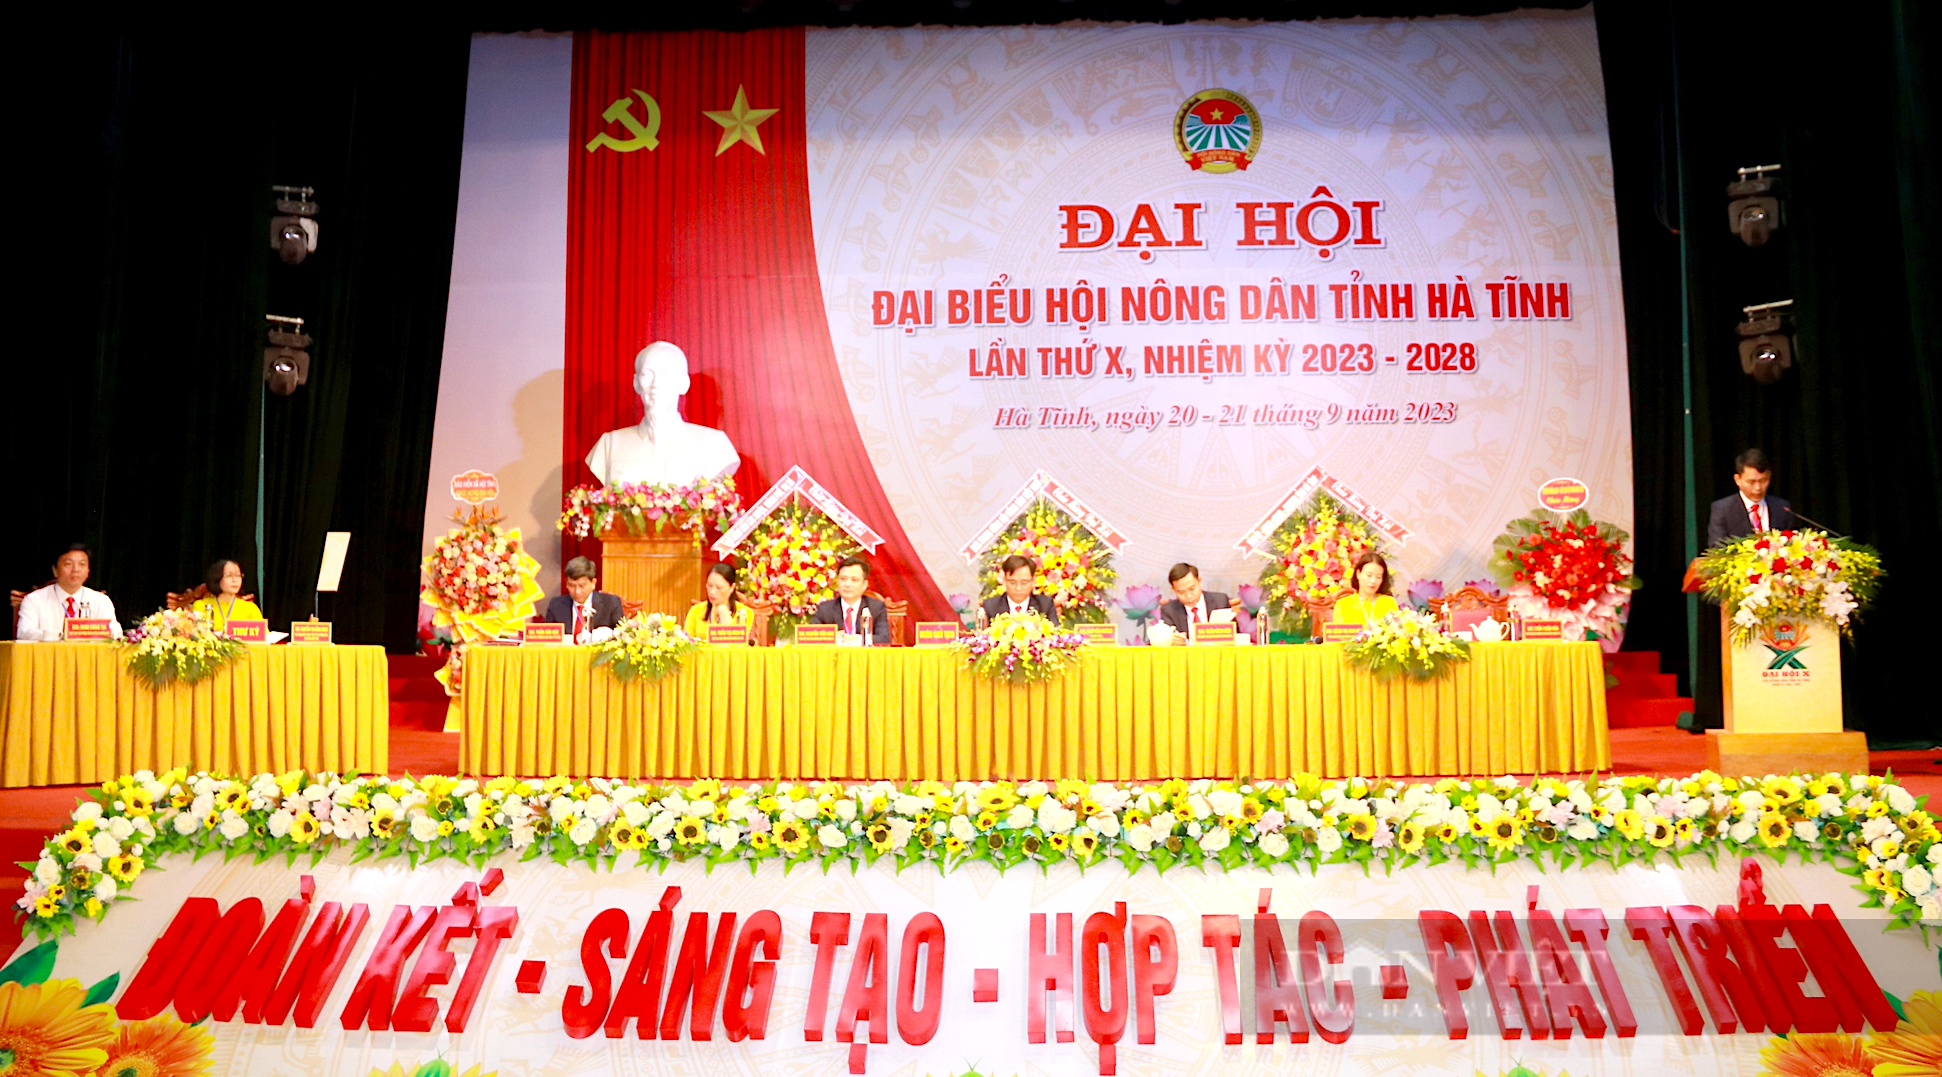 Ông Ngô Văn Huỳnh được bầu tái giữ chức Chủ tịch Hội Nông dân tỉnh Hà Tĩnh lần thứ X - Ảnh 1.